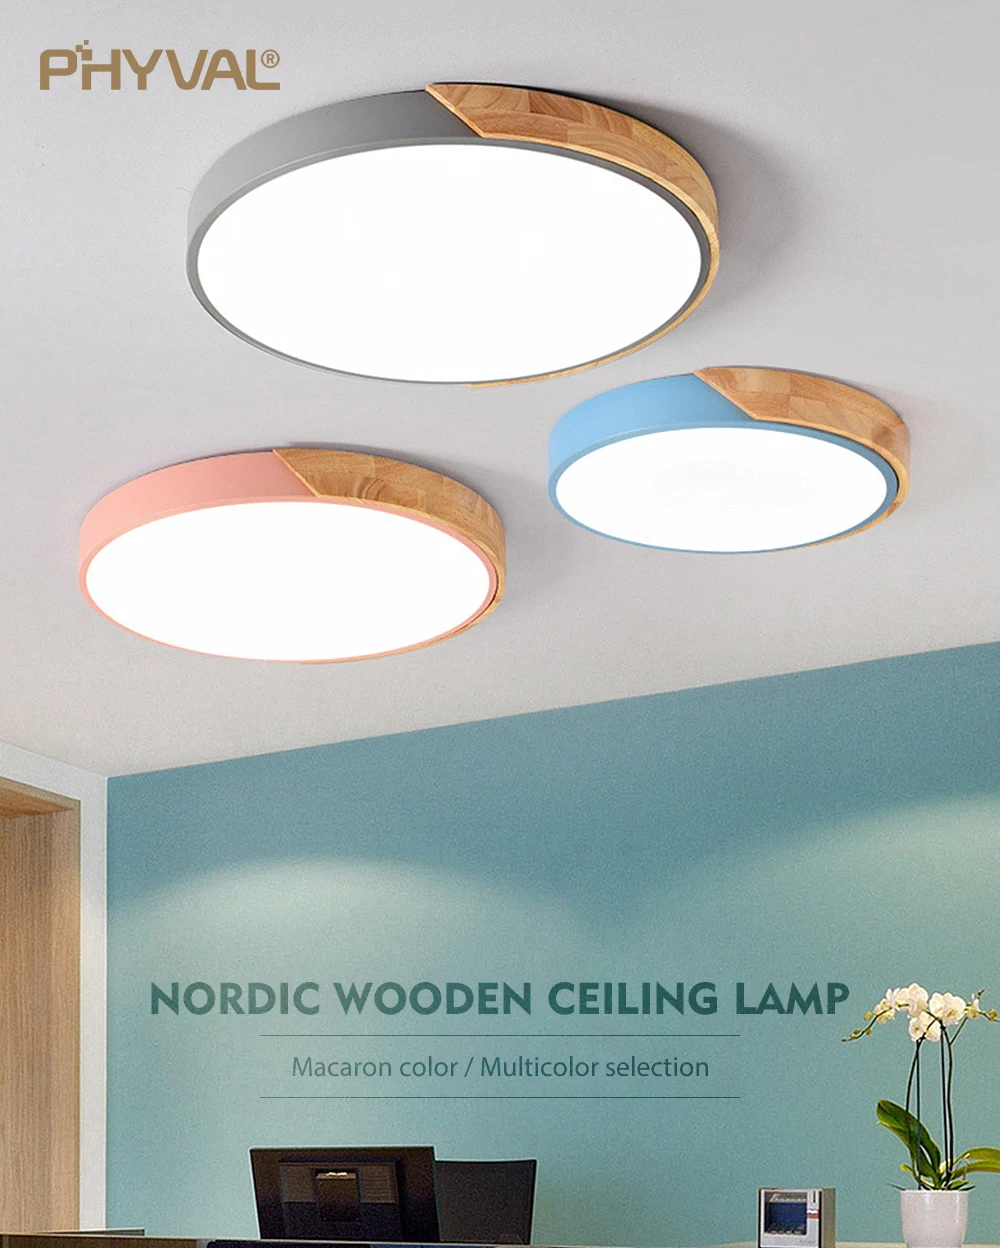 Скандинавские деревянные потолочные светильники с регулируемой яркостью, светодиодные потолочные светильники, круглые, диаметр 30-60, ультра-тонкие, высота 5 см, 7 цветов, железный арт, макарон